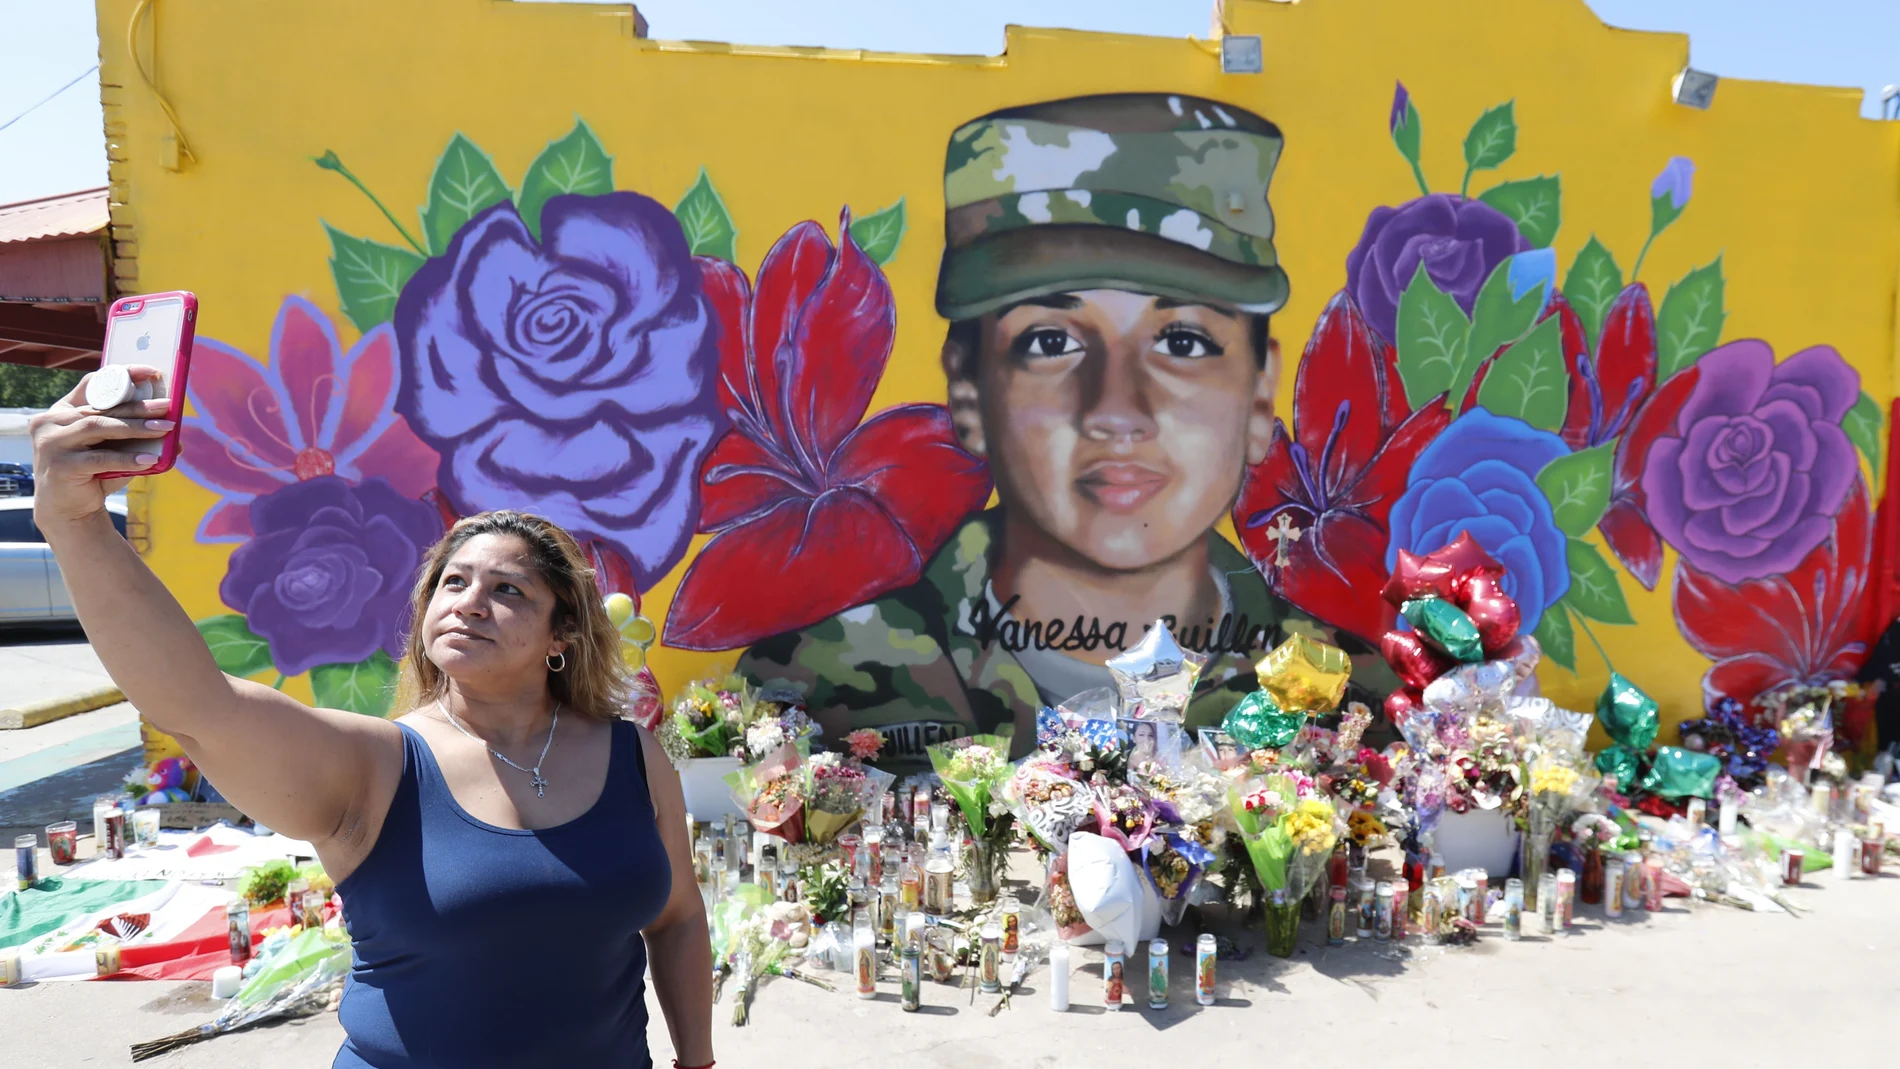 Irma Portillo se hace una autofoto frente al mural dedicado a. Vanessa Guillen en Texas